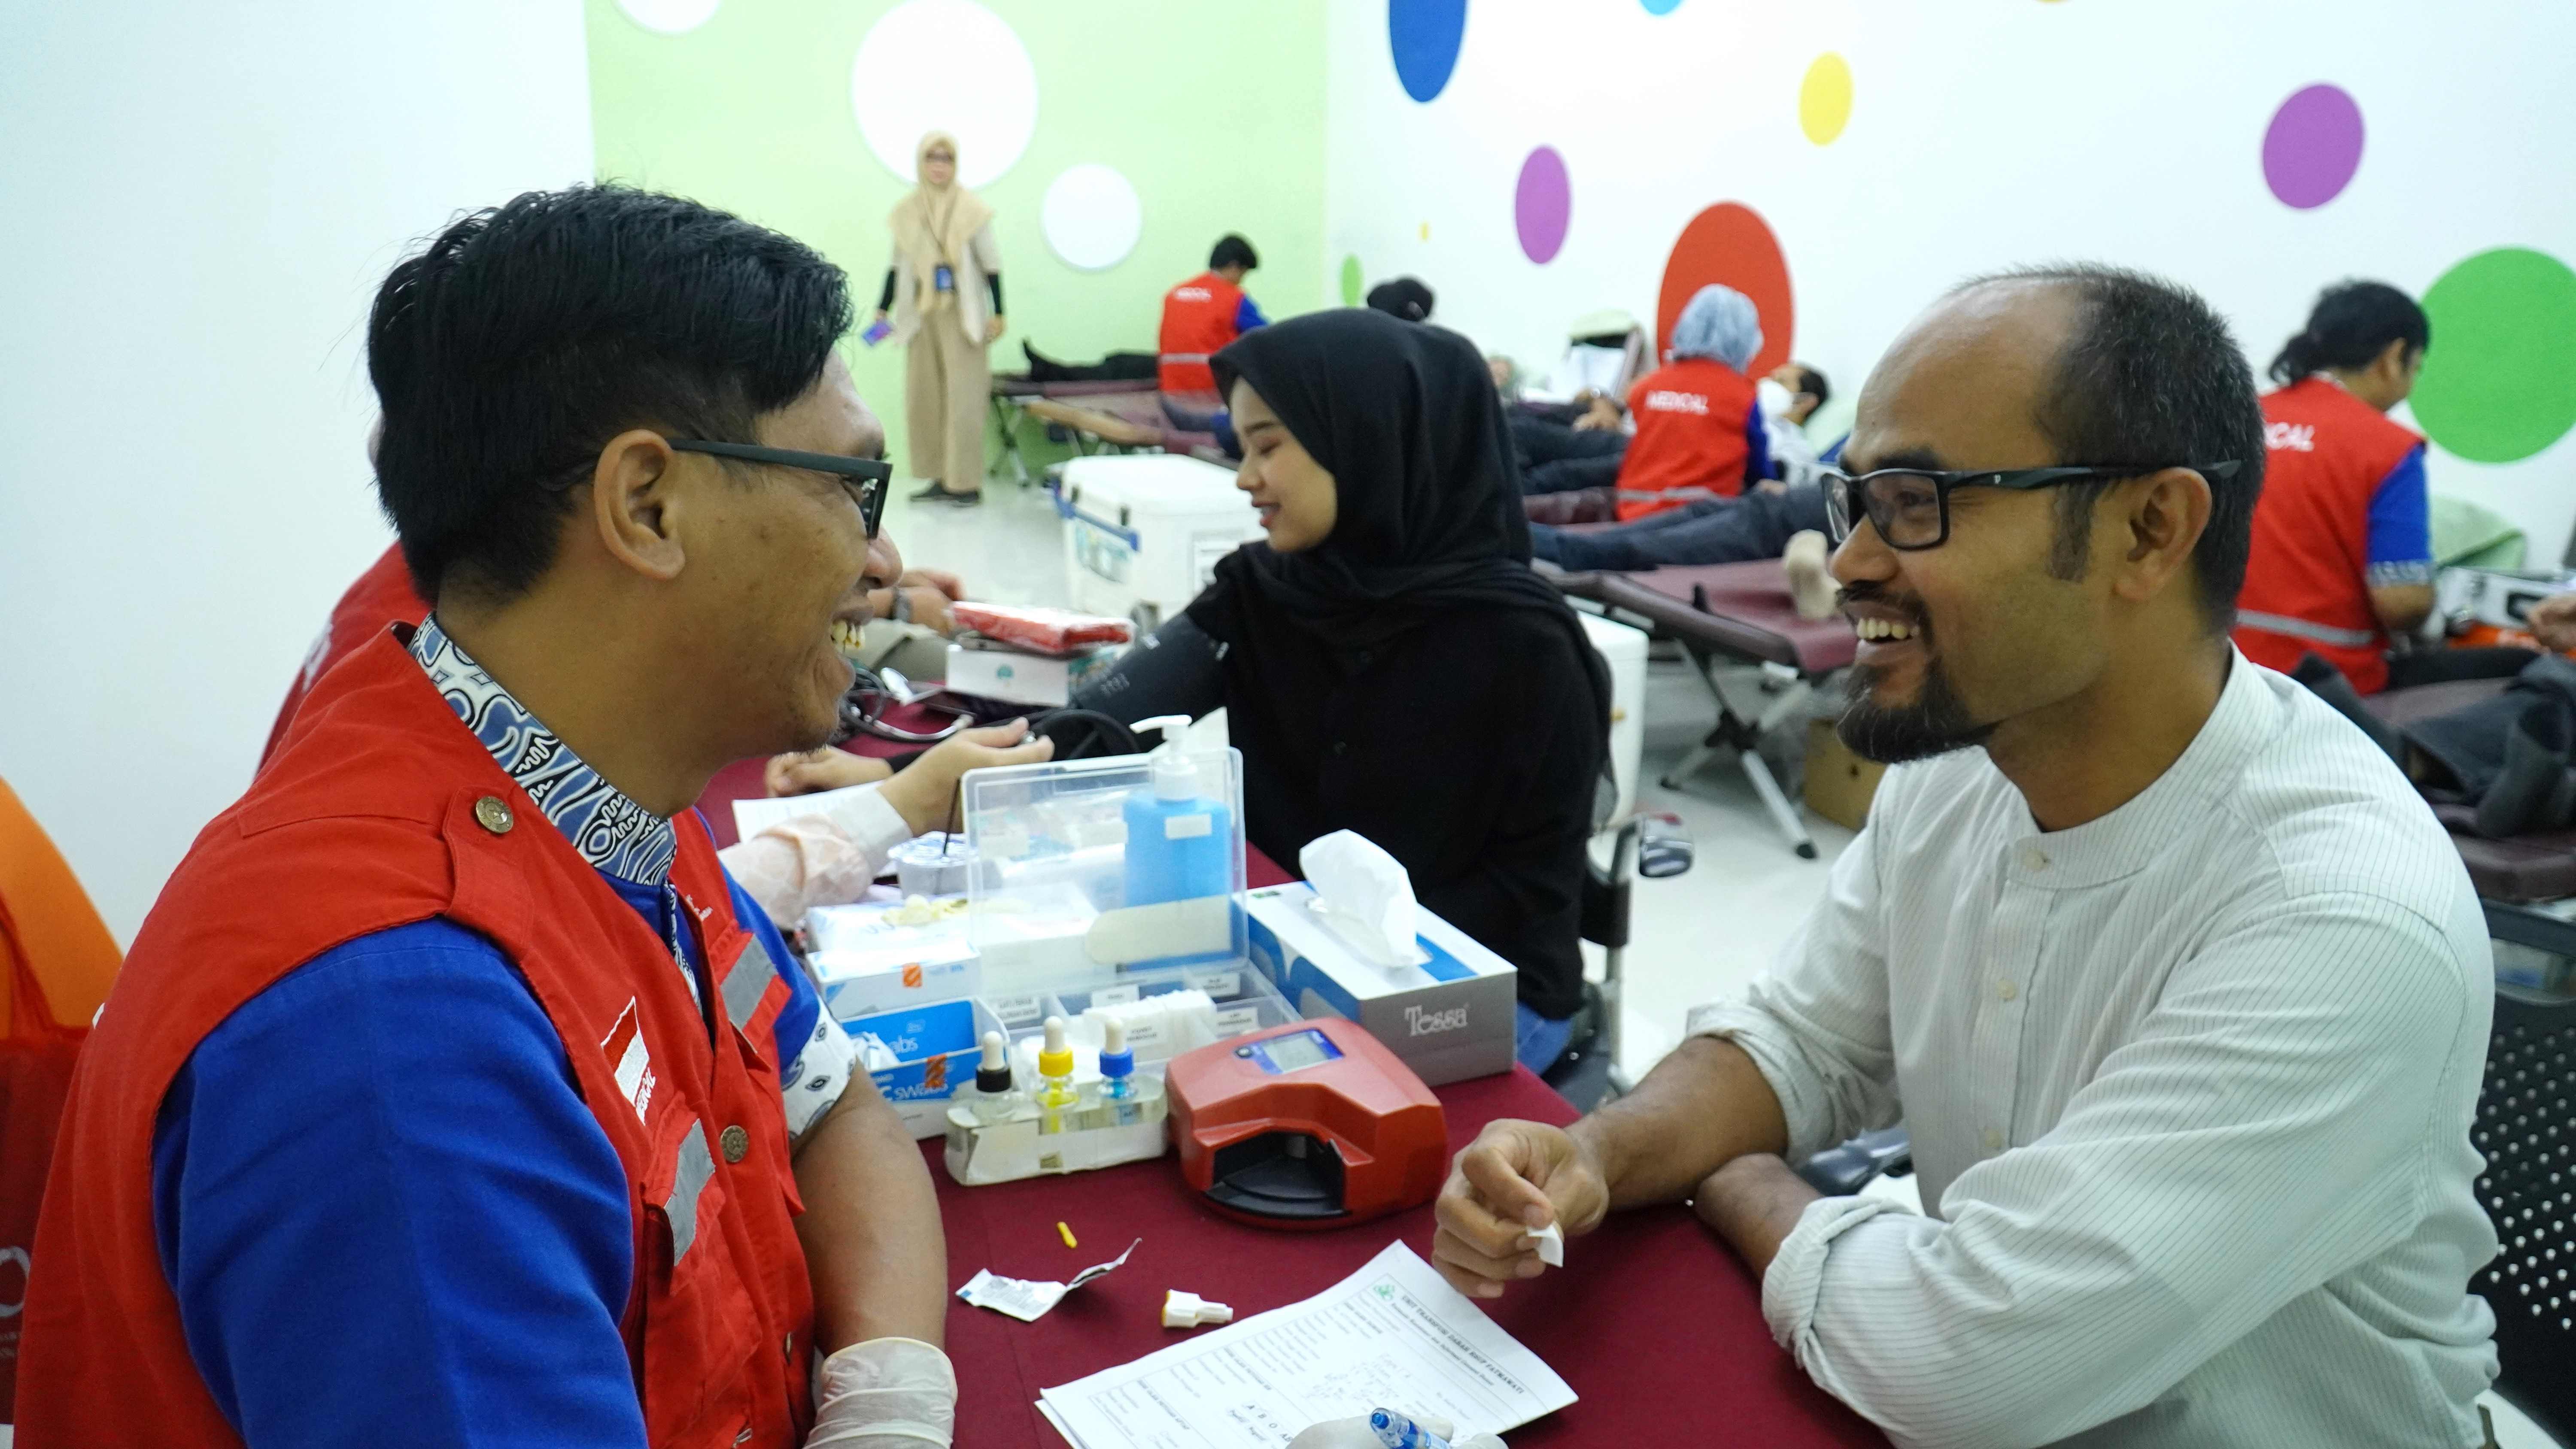 Sinergi Kebaikan Menjaga Kesehatan dan Keselamatan Bersama, IHC Gelar Donor Darah di Menara Sentraya